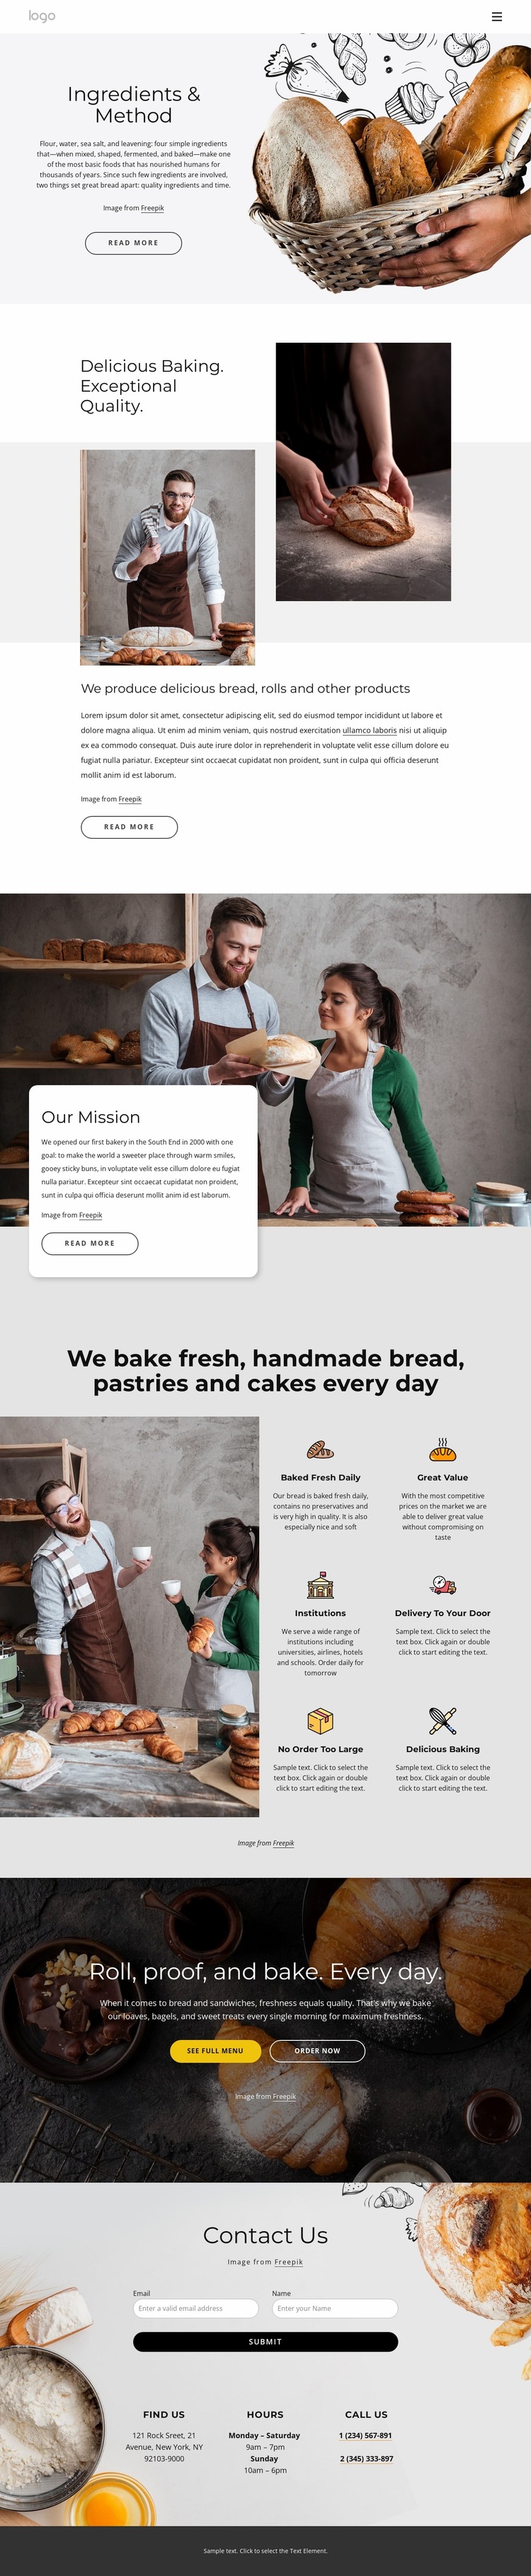 We bake handmade bread Website Design